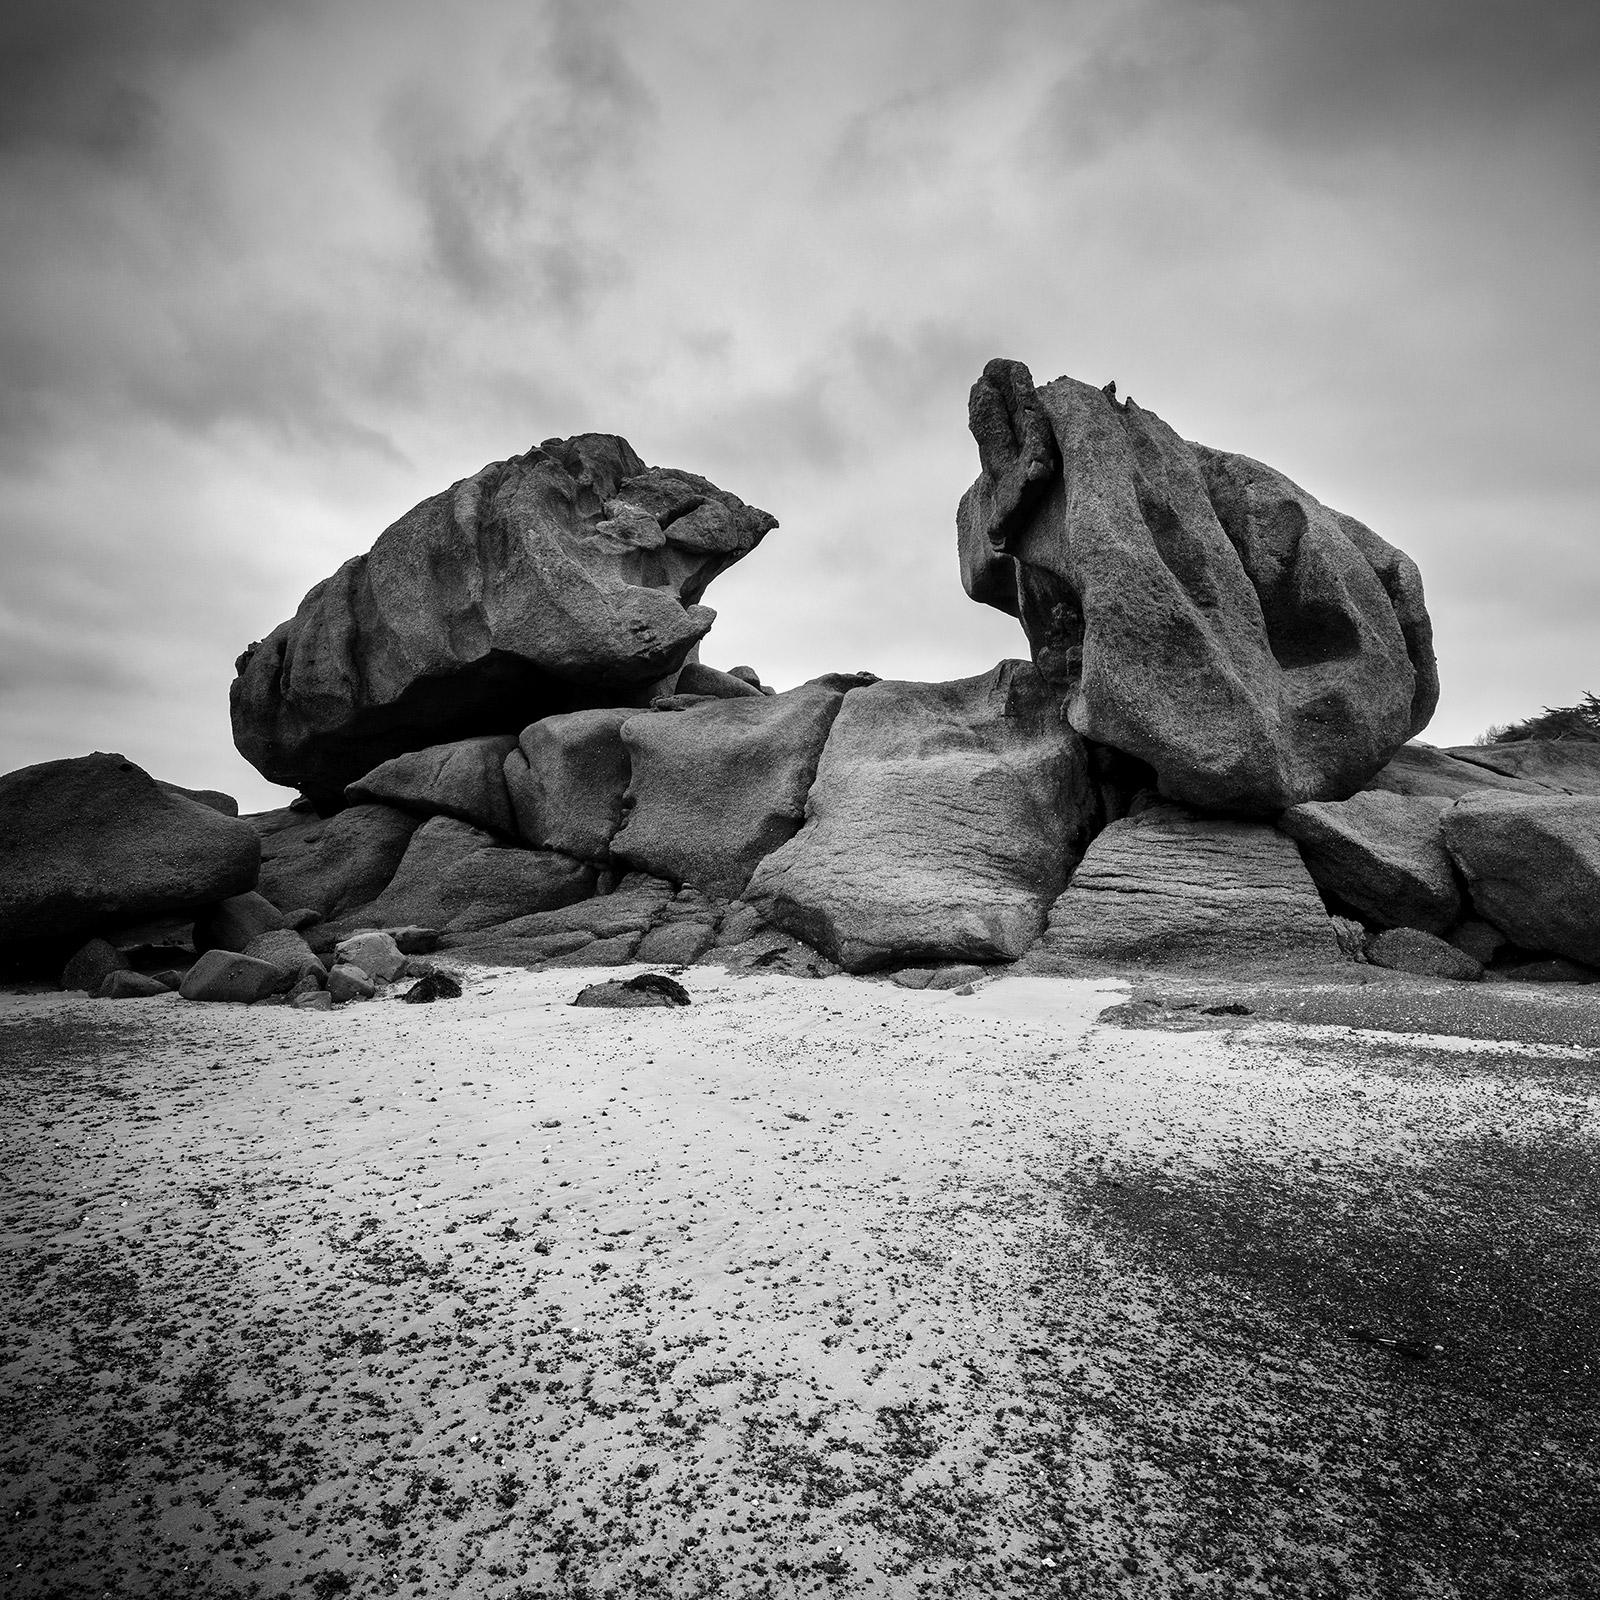 Crab Claws Rock, Granitküste, Frankreich, Schwarz-Weiß-Landschaftsfotografie